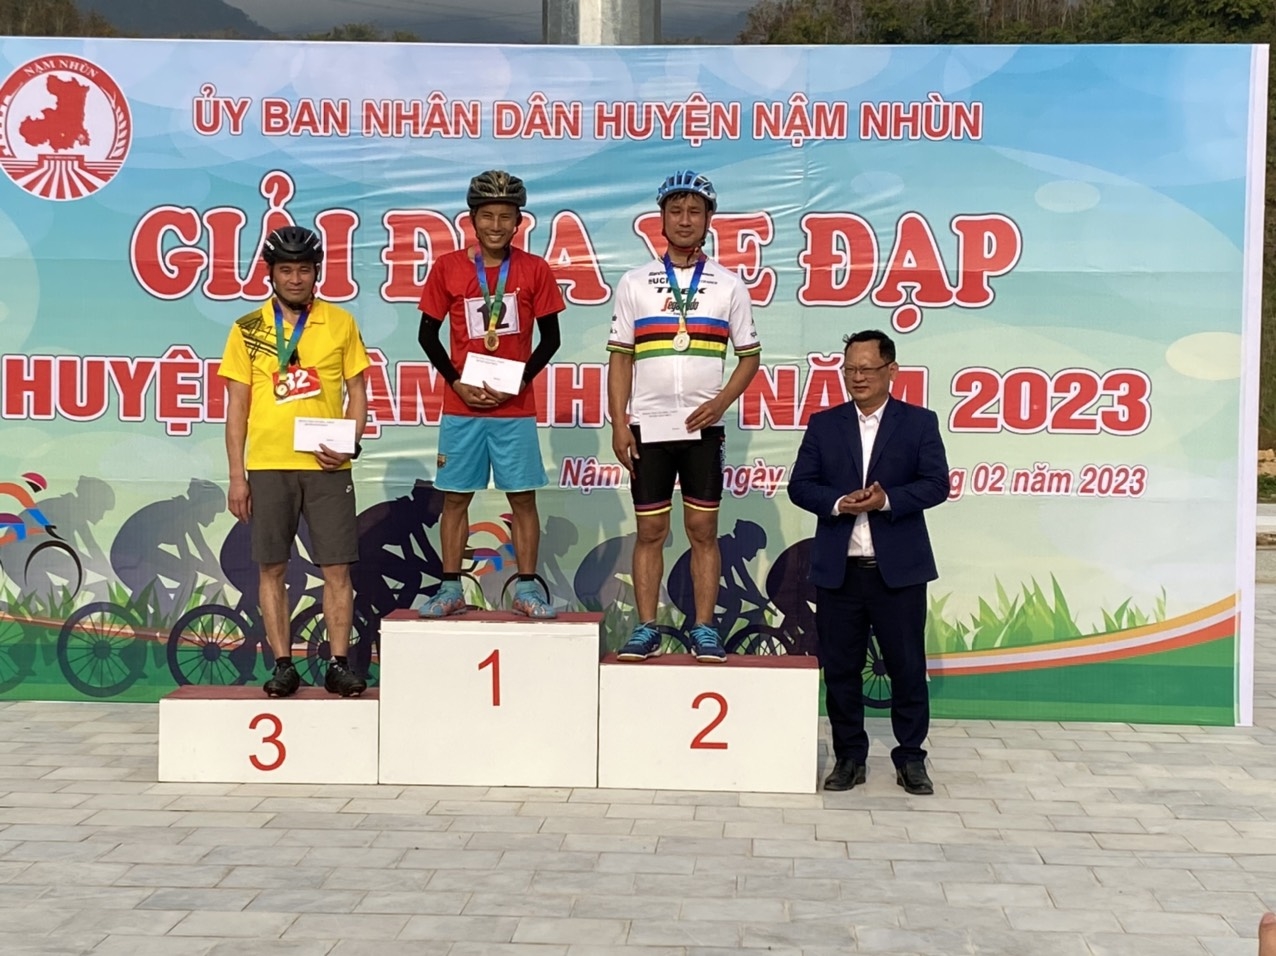 Trao giải thưởng cho những vận động viên tham gia giải đua xe đạp giao hữu dọc bờ sông Đà.